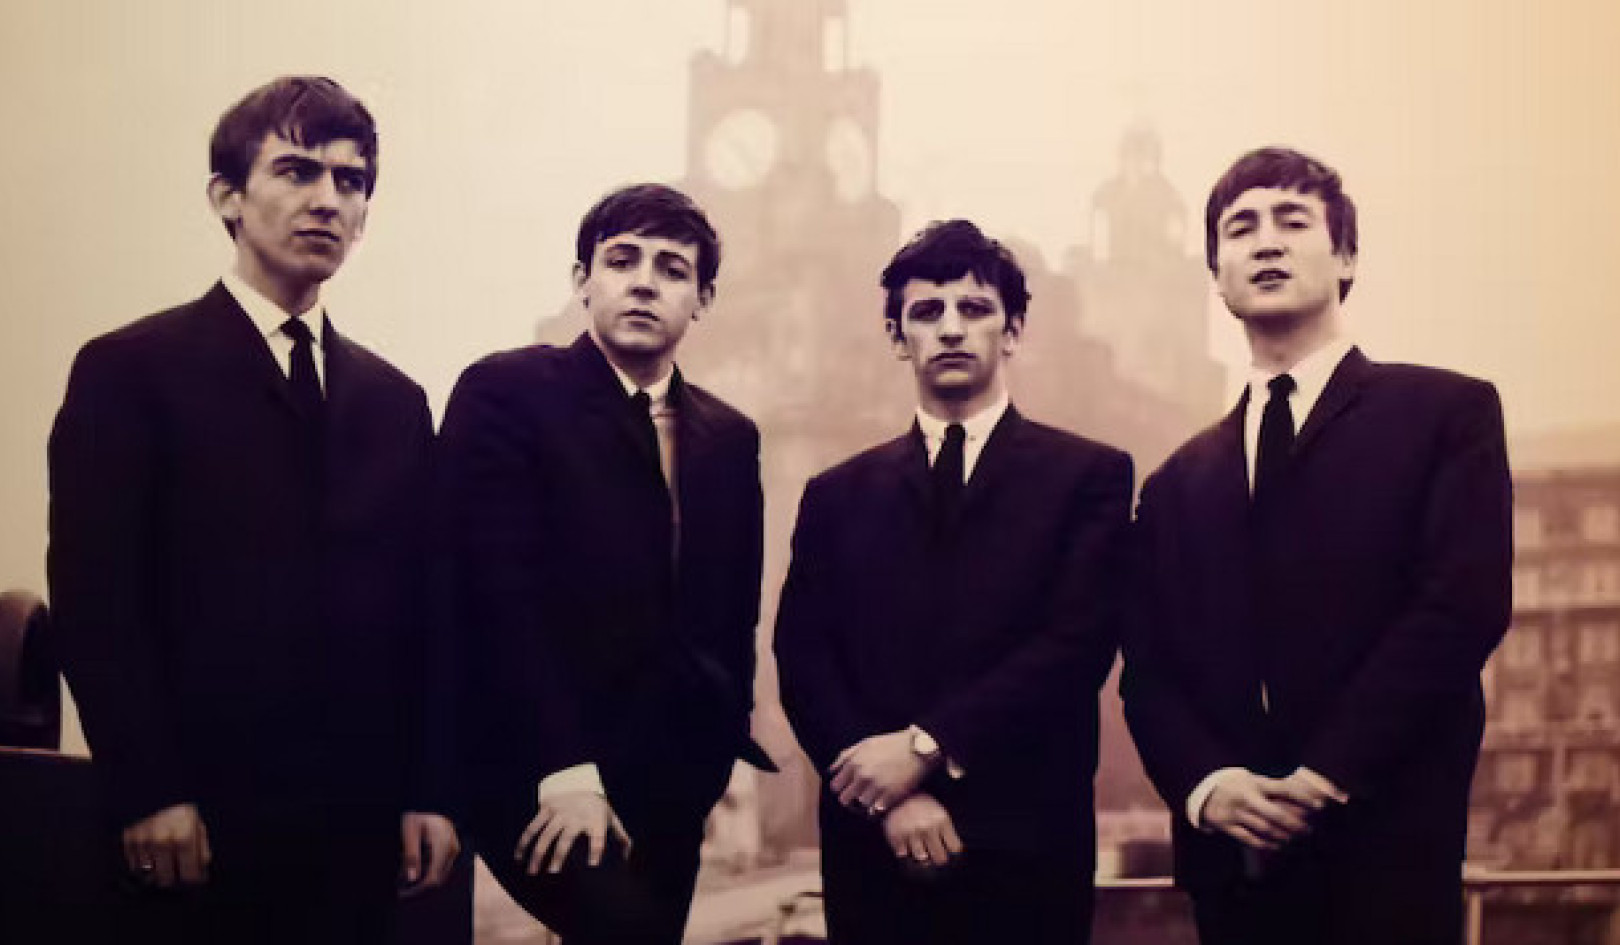 The Beatles omfamnar AI: "Now and Then" blandar förtid med nutid